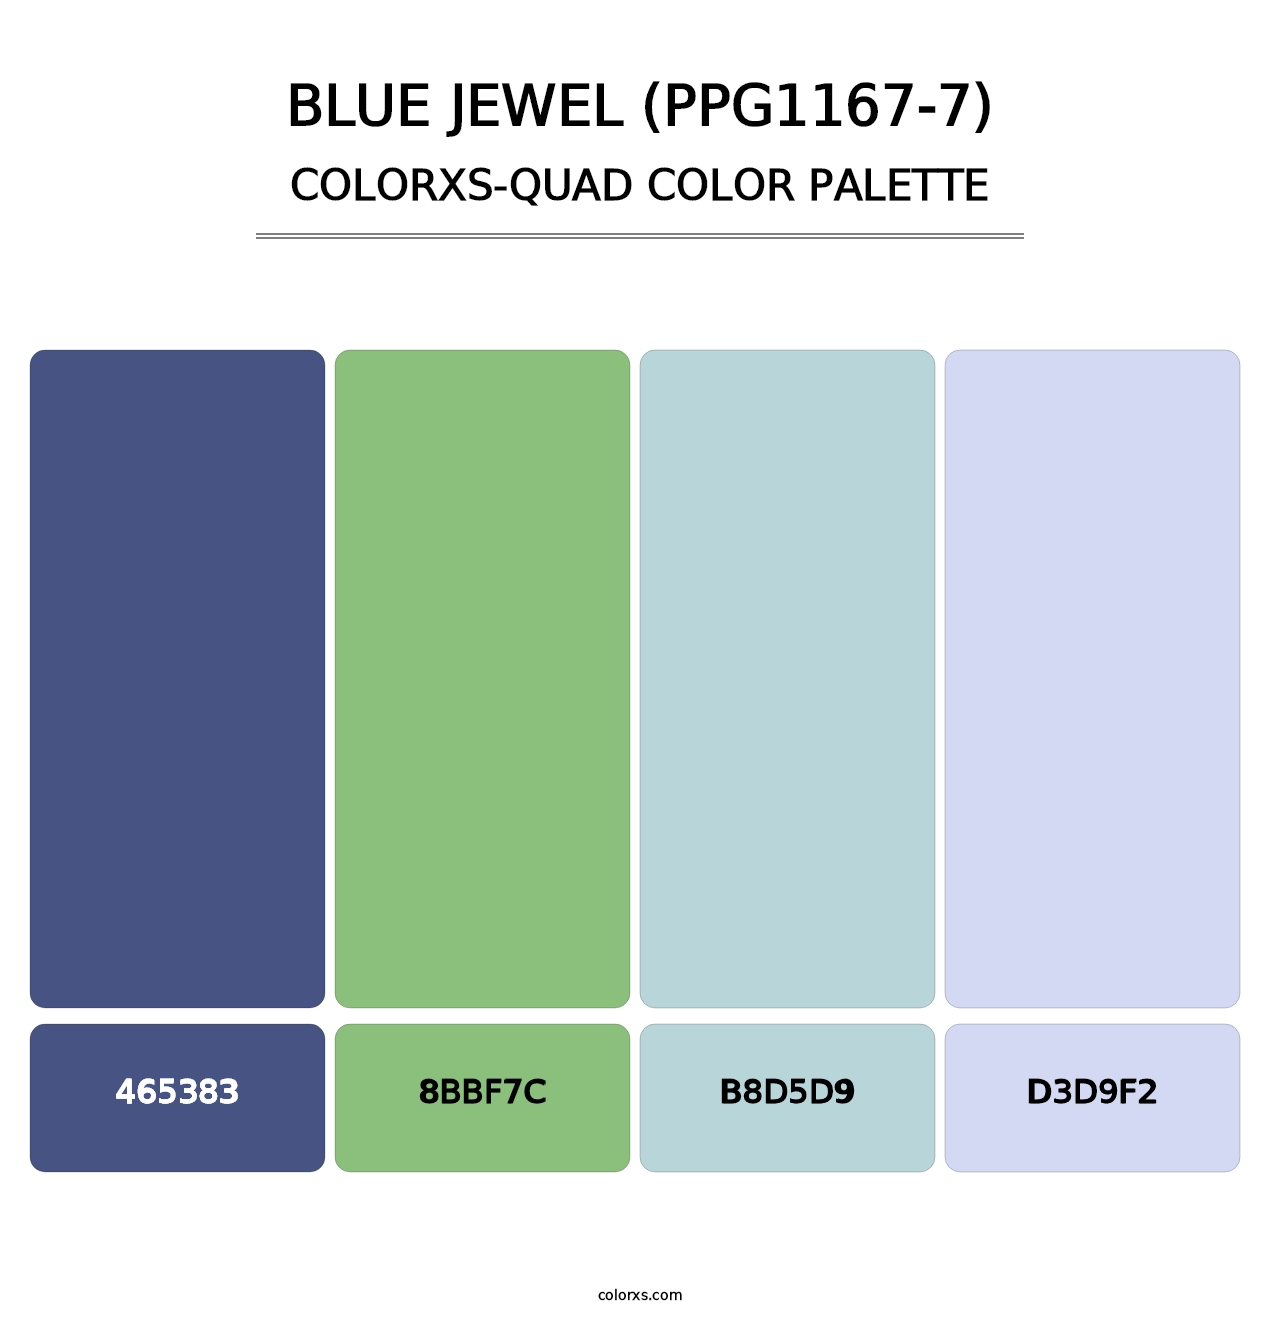 Blue Jewel (PPG1167-7) - Colorxs Quad Palette